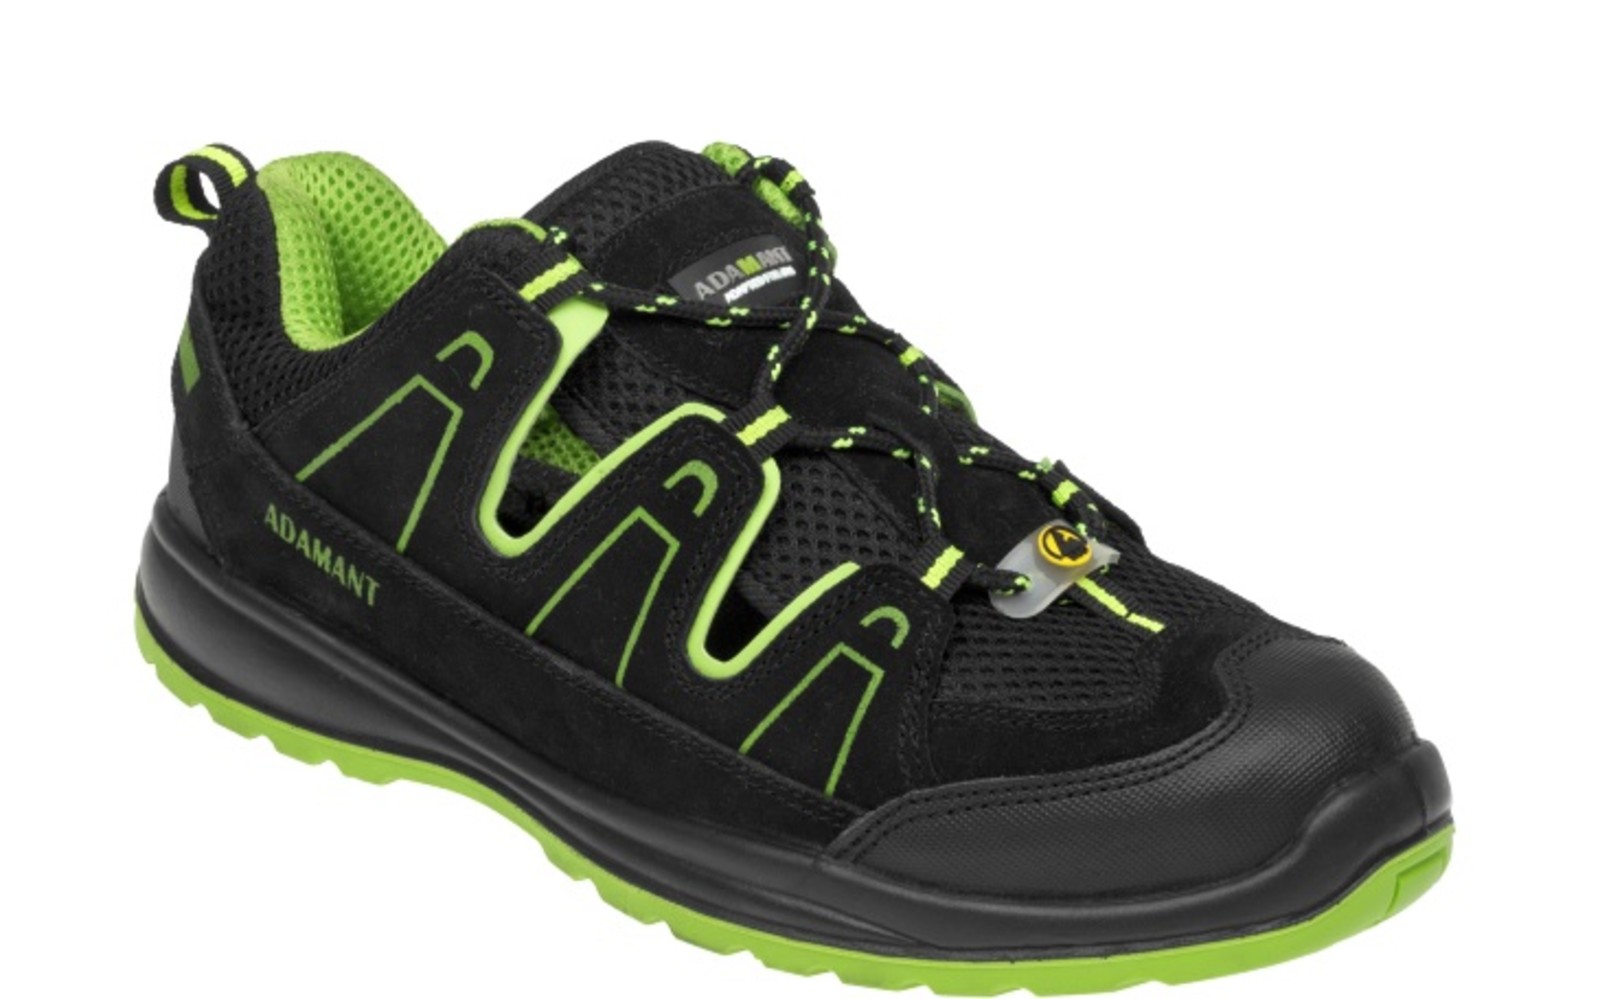 Bezpečnostné sandále Adamant Alegro S1 ESD - veľkosť: 45, farba: čierna/zelená